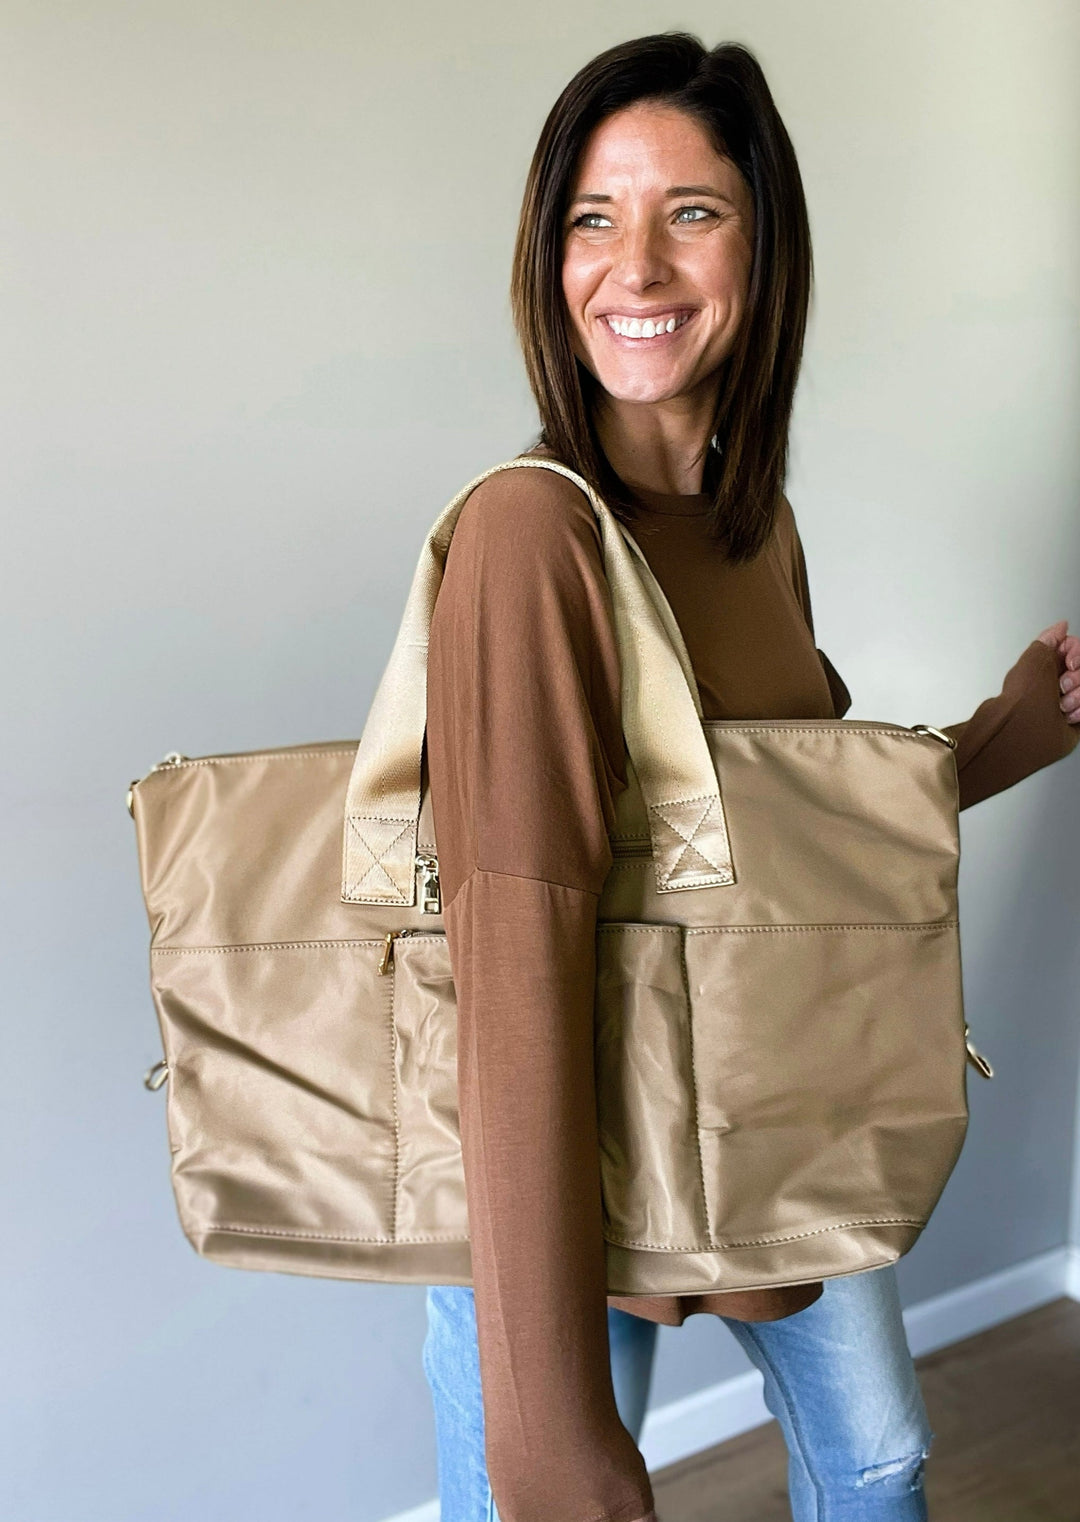 Women's Travel Bag - Taupe Nylon Weekender Bag